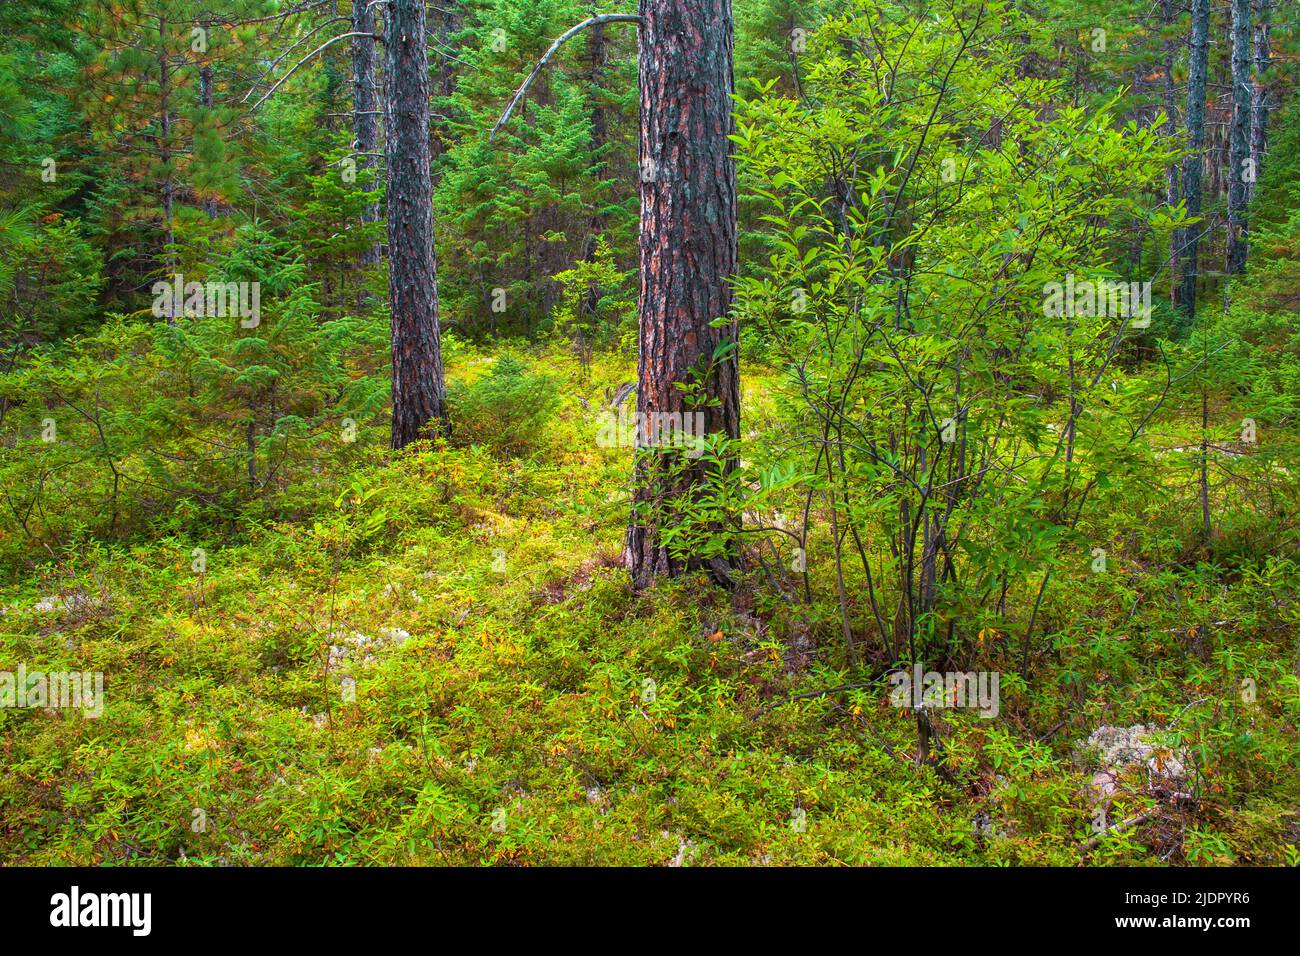 Une forêt boréale avec du pin rouge dans le Parc National des Hautes-Gorges-de-la-Rivière-Malbaie, (Québec), Canadsa Banque D'Images